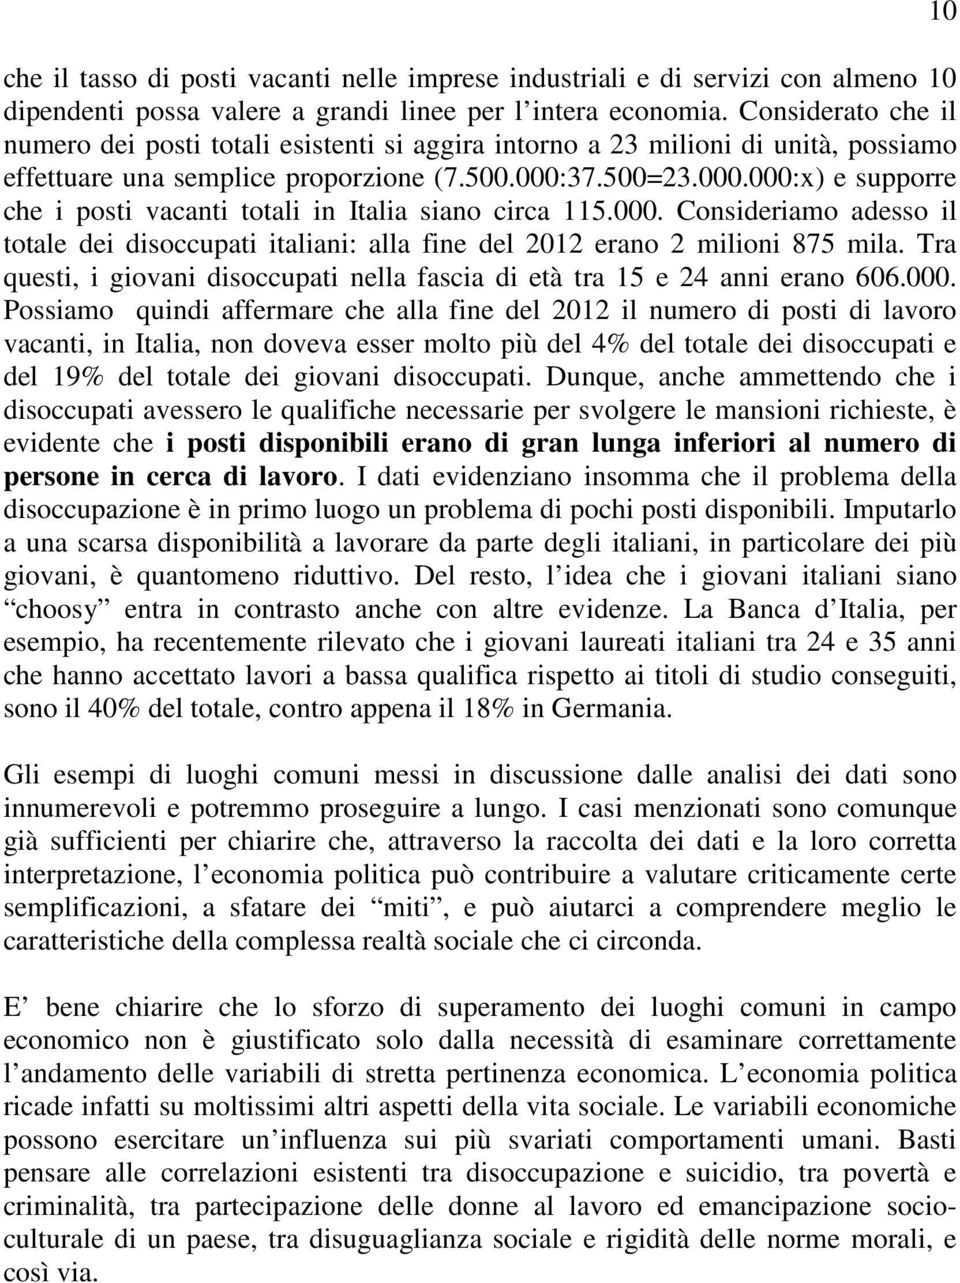 37.500=23.000.000:x) e supporre che i posti vacanti totali in Italia siano circa 5.000. Consideriamo adesso il totale dei disoccupati italiani: alla fine del 202 erano 2 milioni 875 mila.